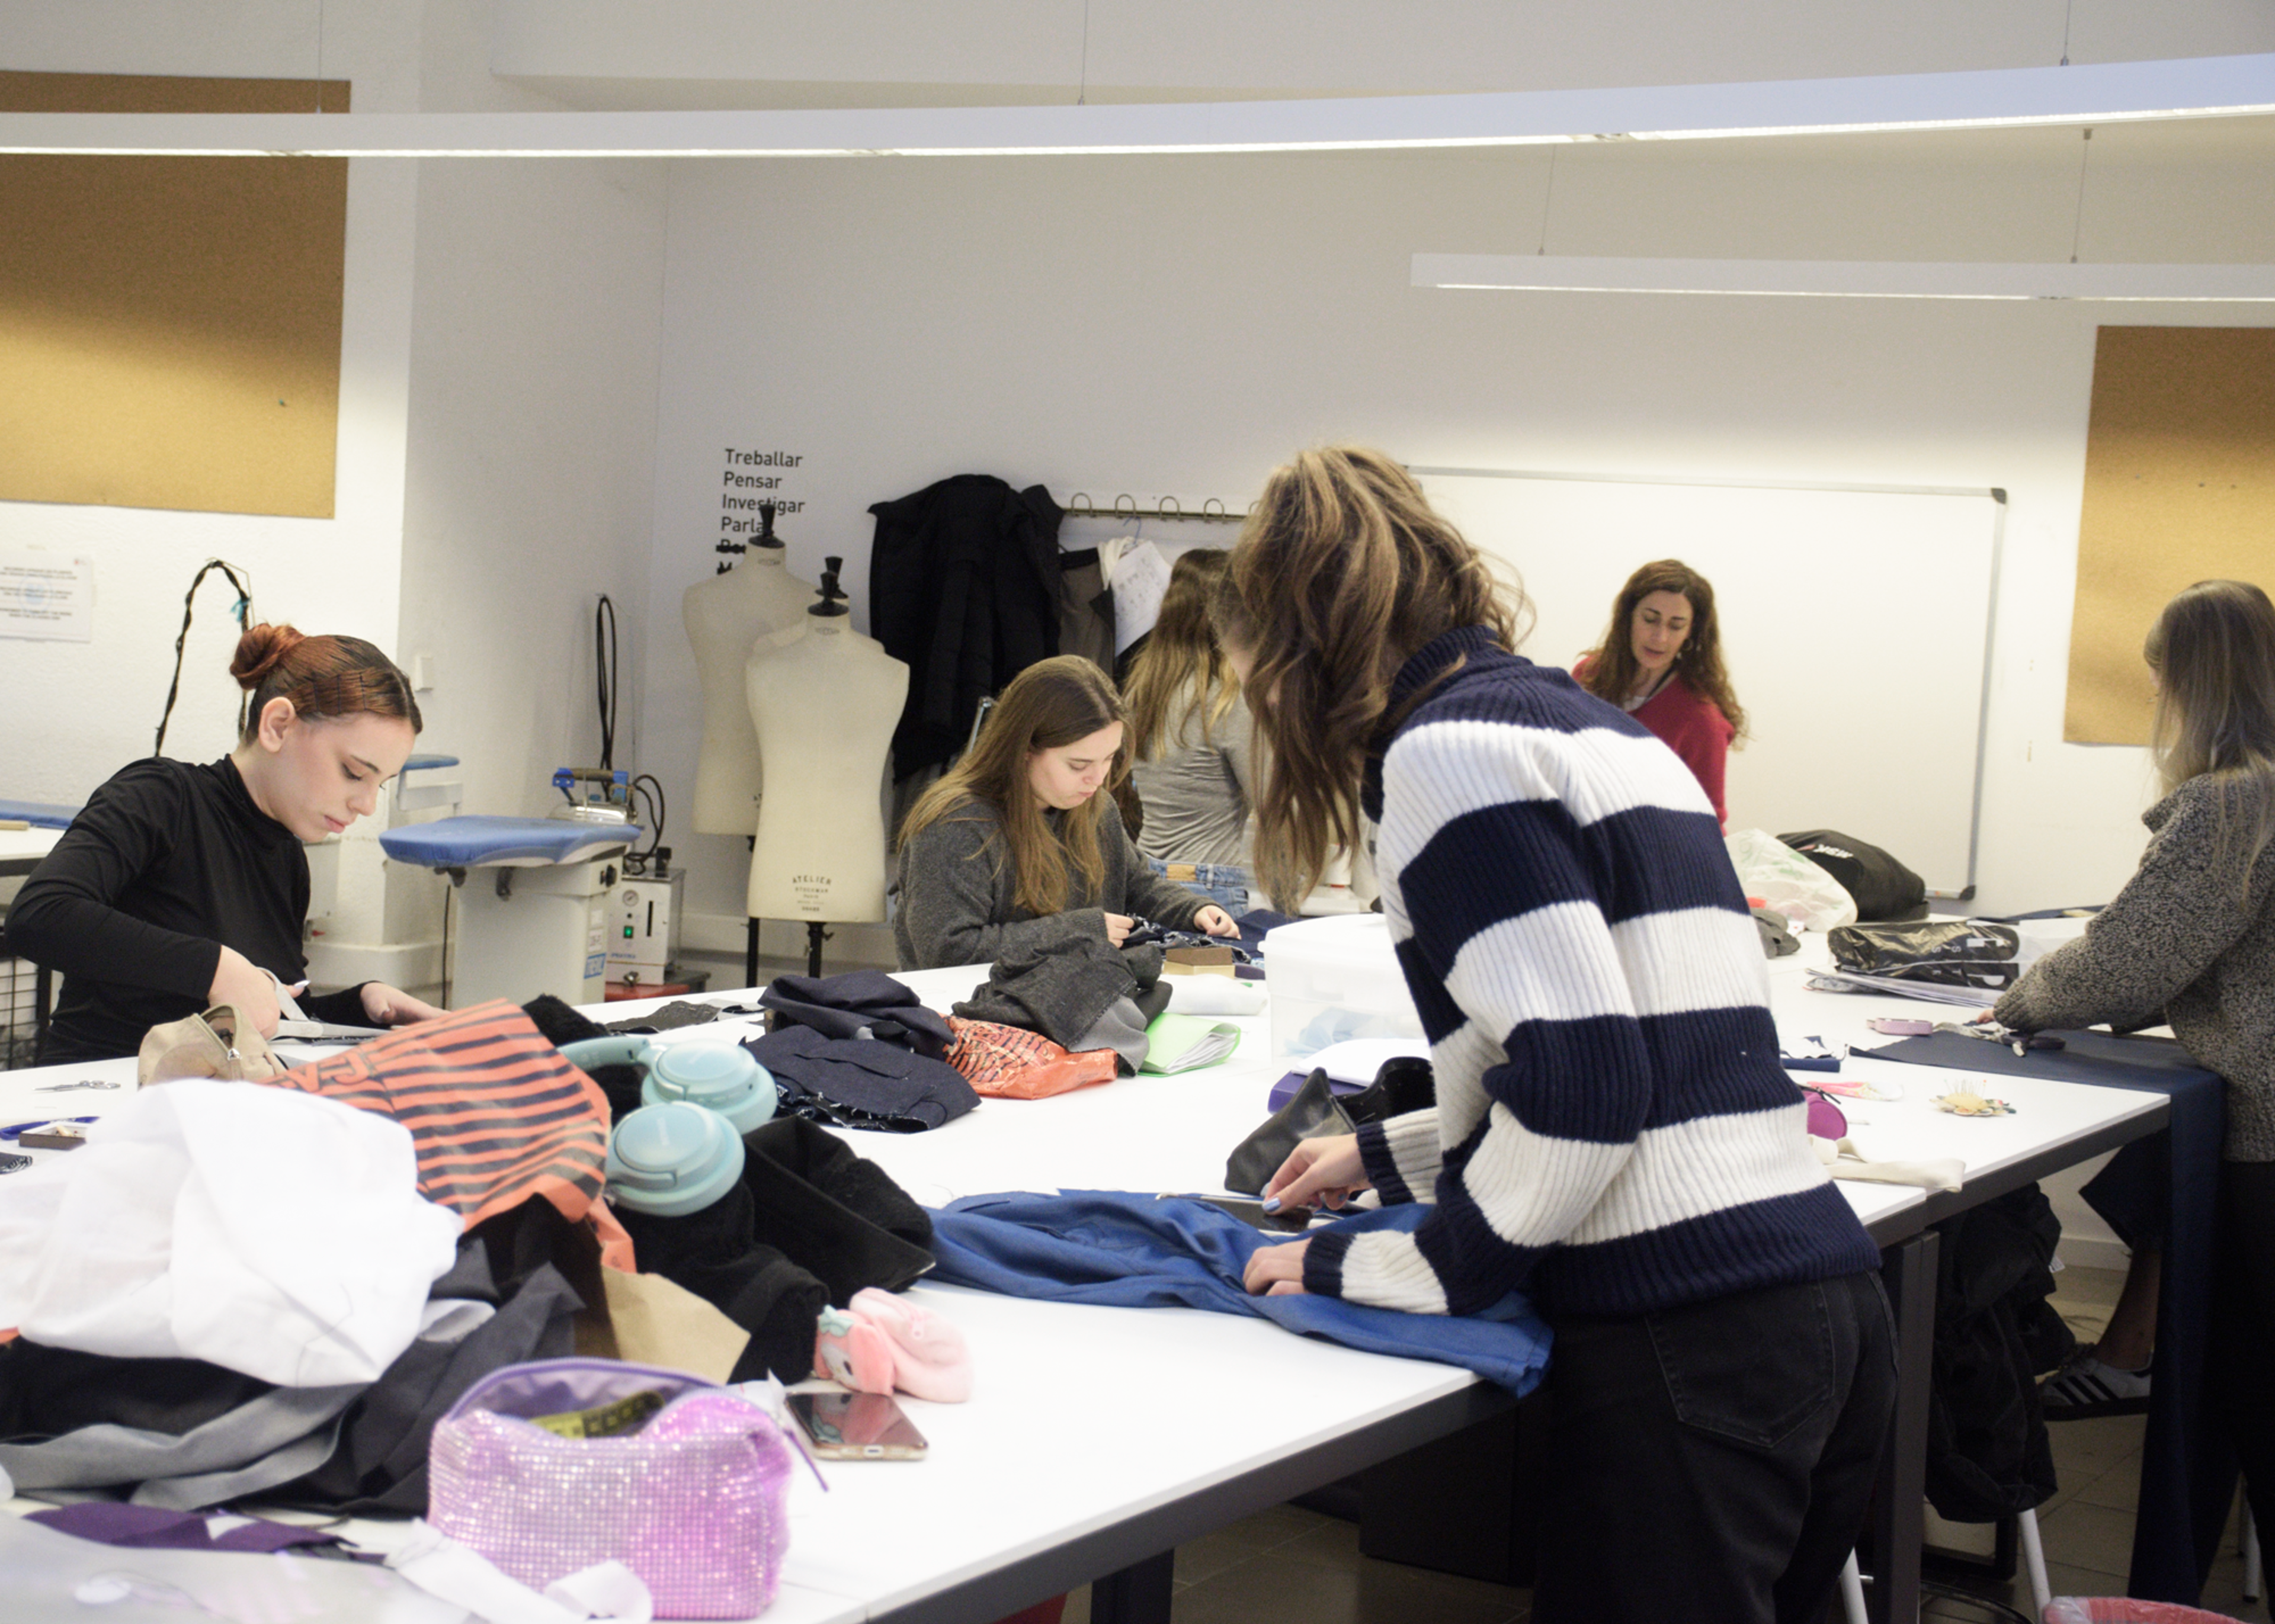 Estudiantes de moda trabajan diligentemente en varias prendas en una mesa de estudio concurrida, rodeados de tela y herramientas de diseño.

